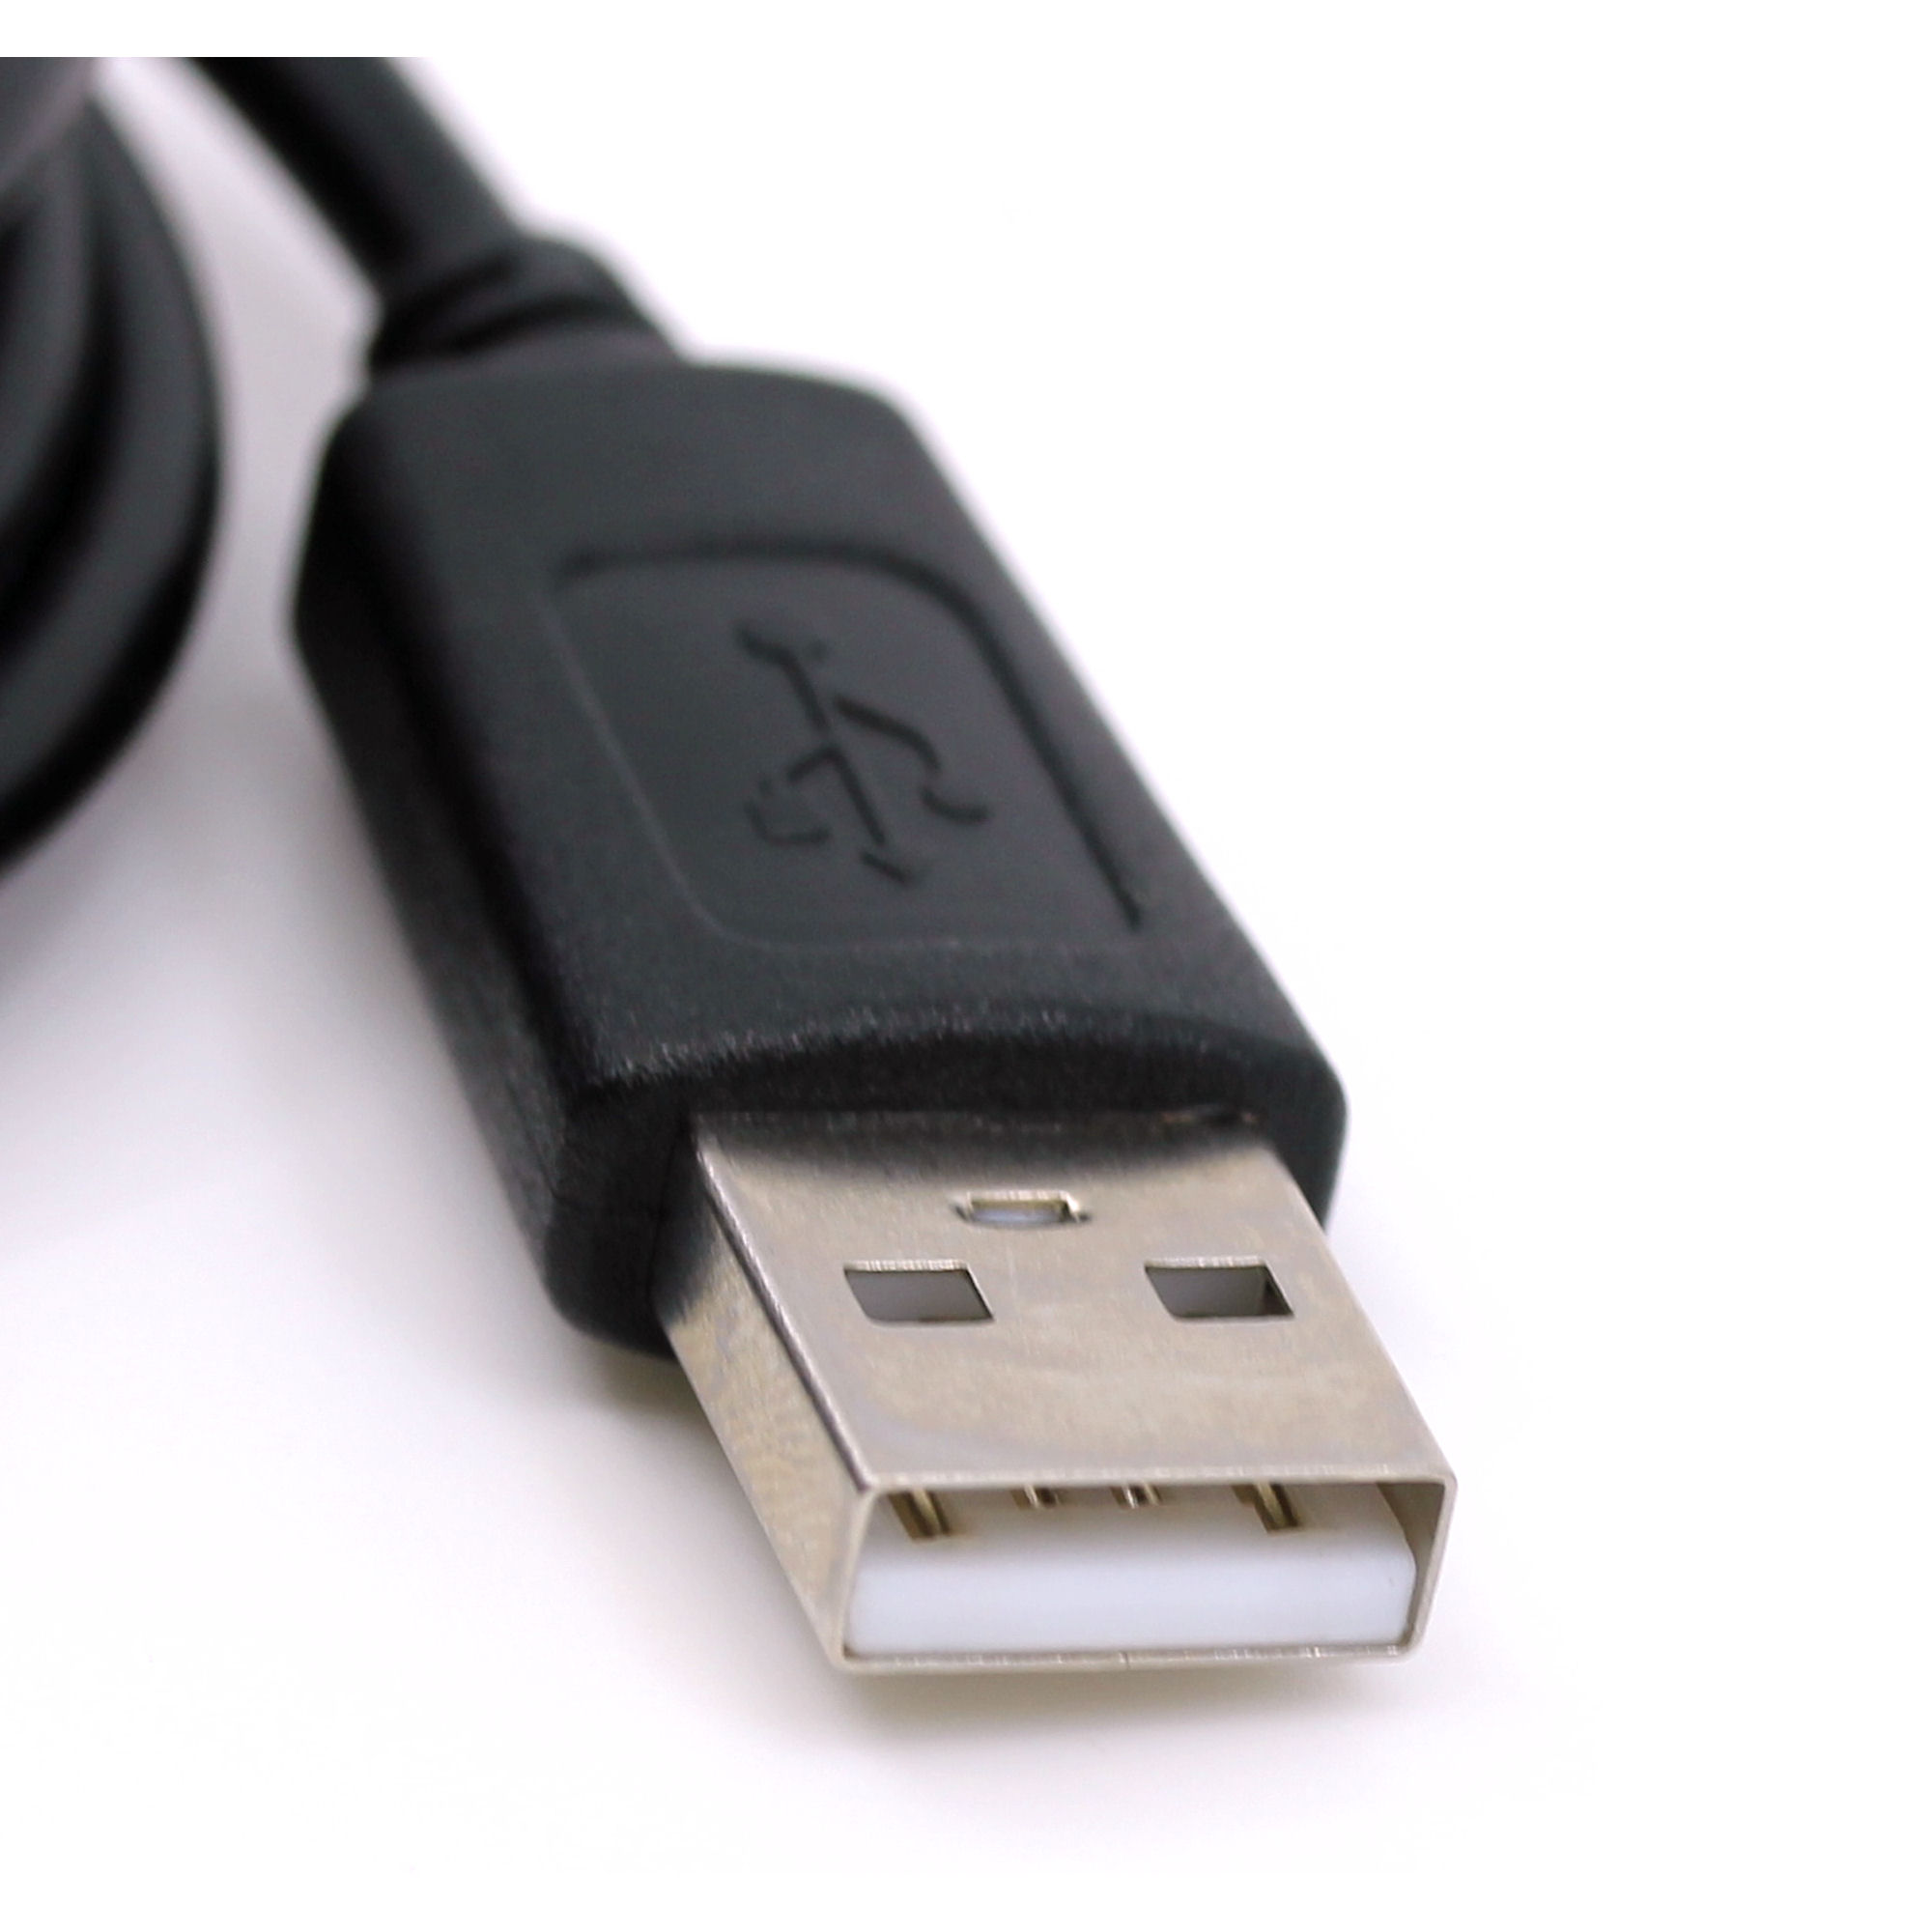 USB Datenkabel für JVC GZ-MG505, GZ-MG555, GZ-MG57, GZ-MG630, GZ-MG67, GZ-MG70, GZ-MG730, GZ-MG75